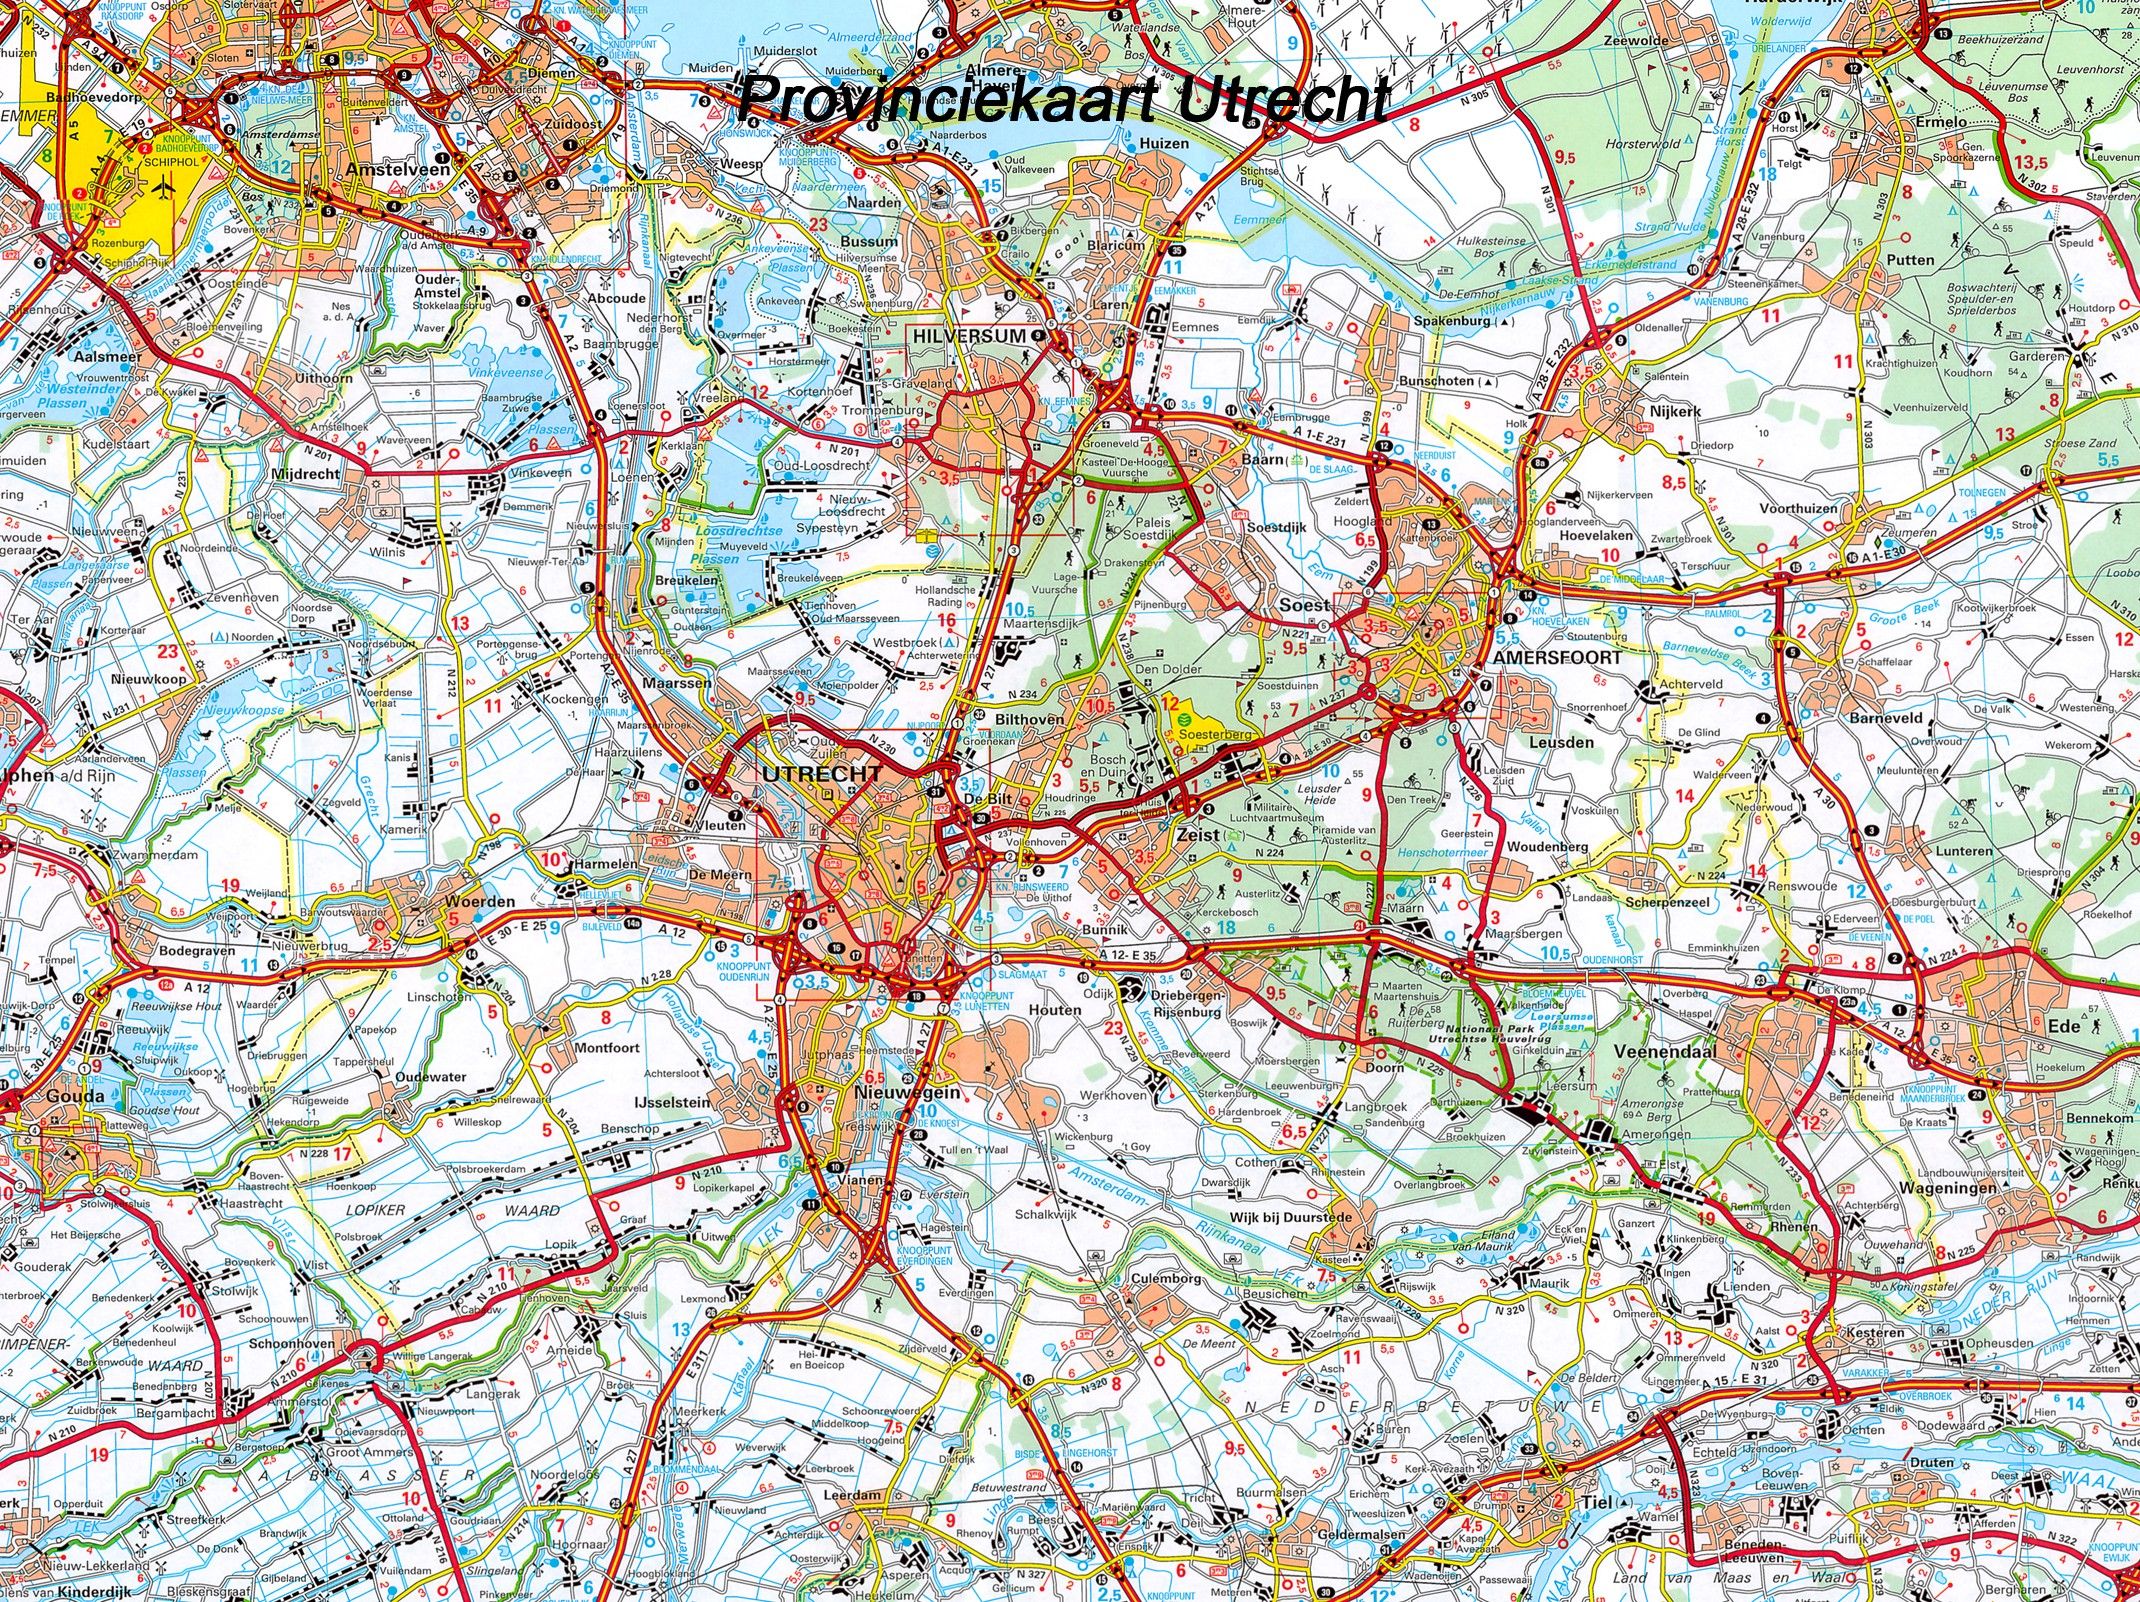 Provincie kaart Utrecht 1:100.000